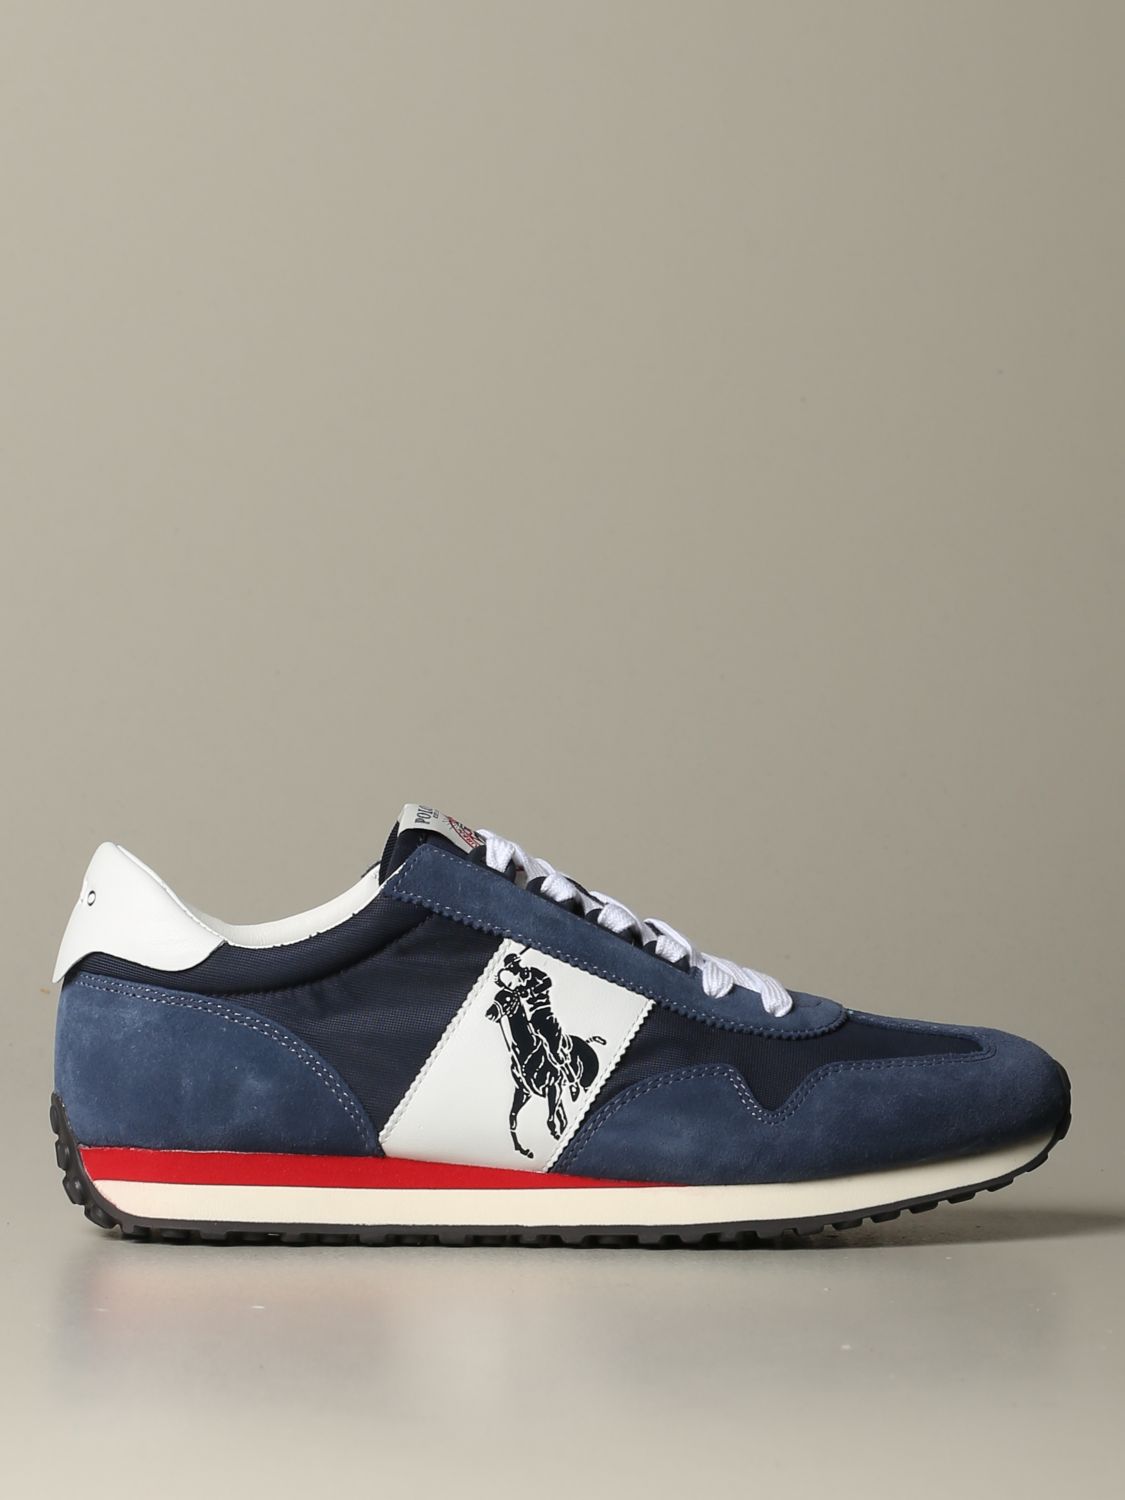 haspel dun Eervol Polo Ralph Lauren Outlet: sneakers for man - Navy | Polo Ralph Lauren  sneakers 809755192 online on GIGLIO.COM